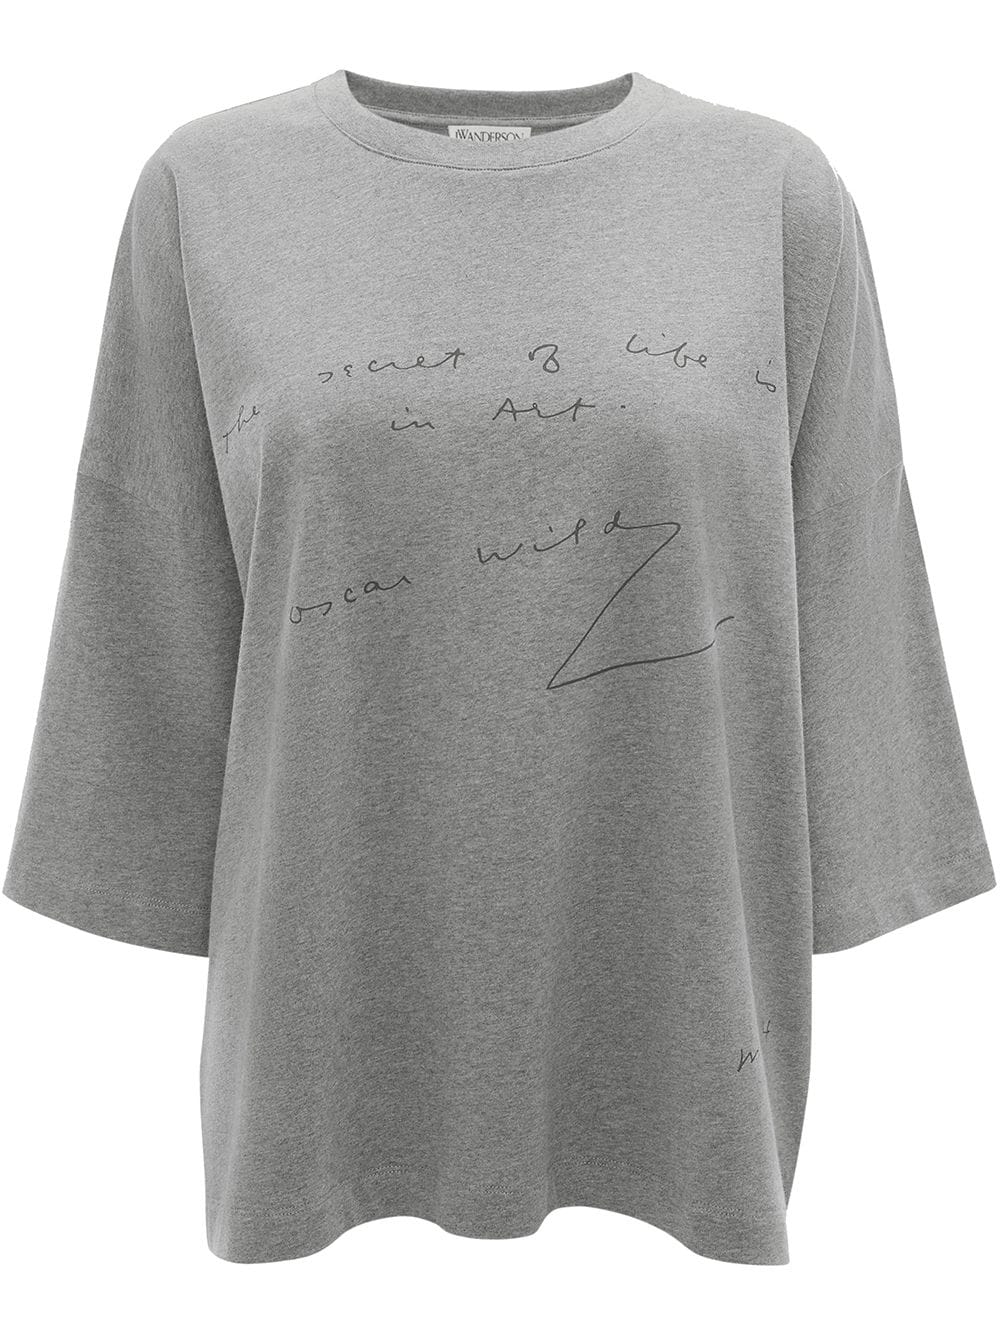 Jw Anderson Oscar Wilde Quote Print T Shirt Grey Glami Es